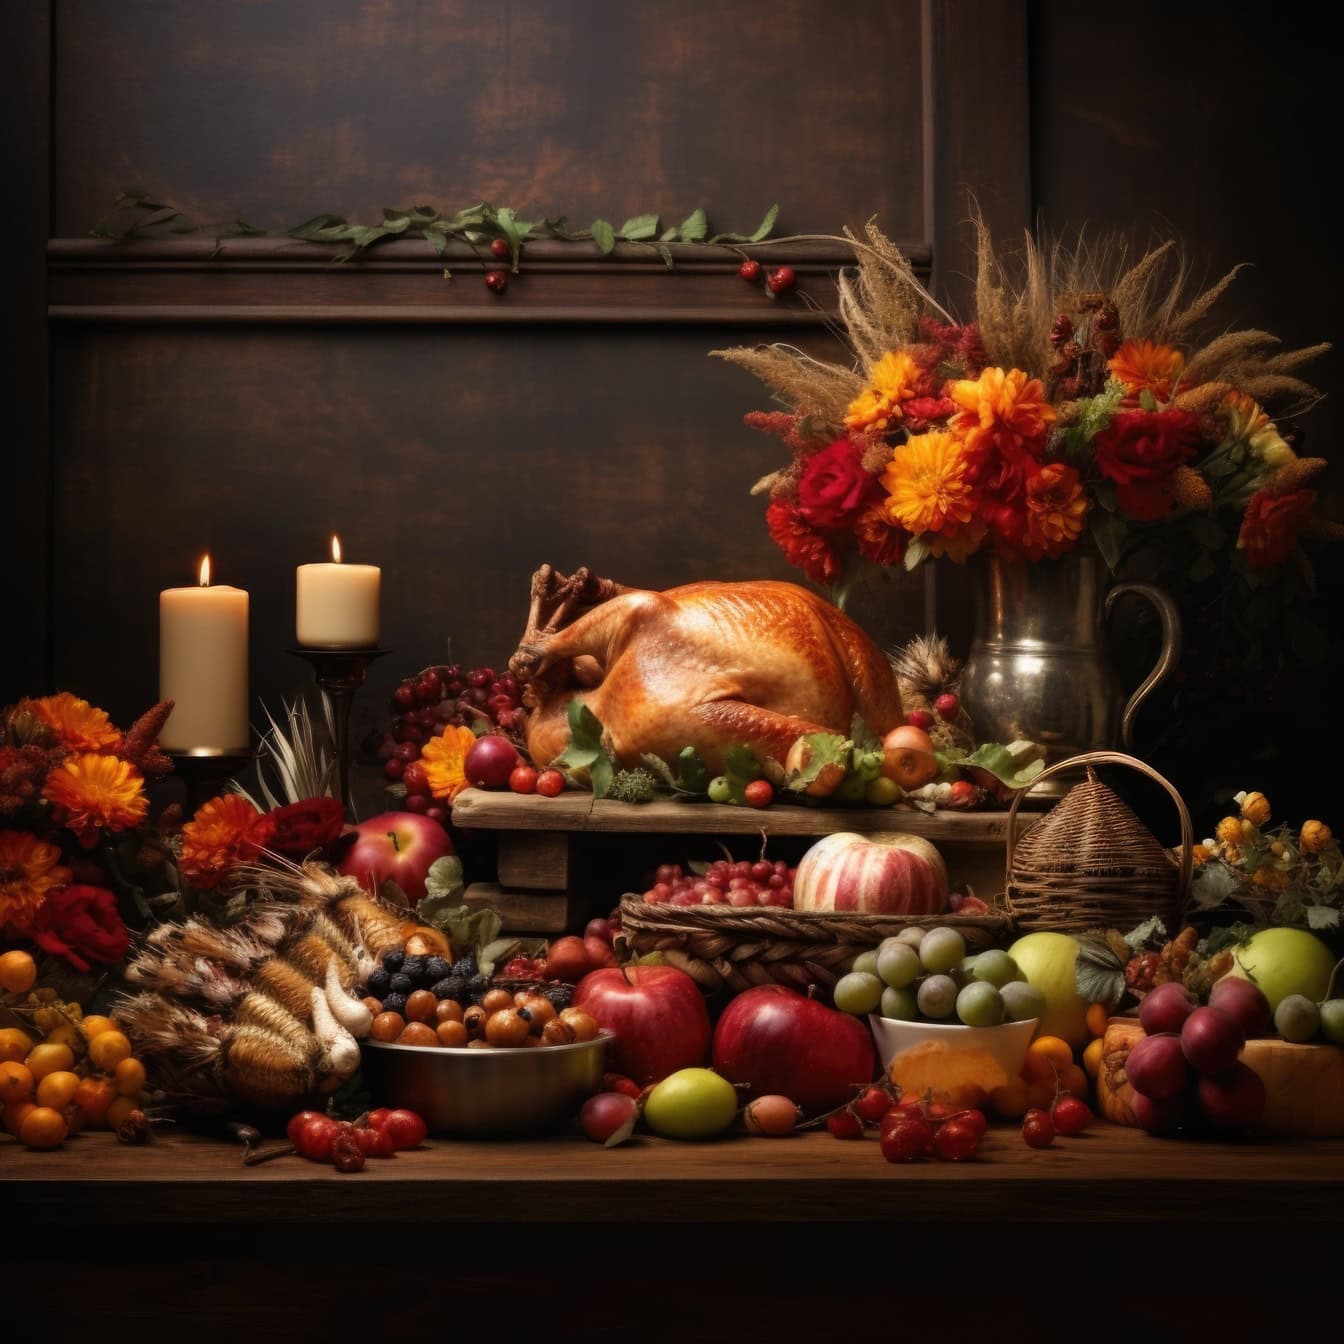 Tacksägelsemiddagsbord med rostad kalkon och olika frukter och blommor i vas, en idealisk stilleben kompositionsmall